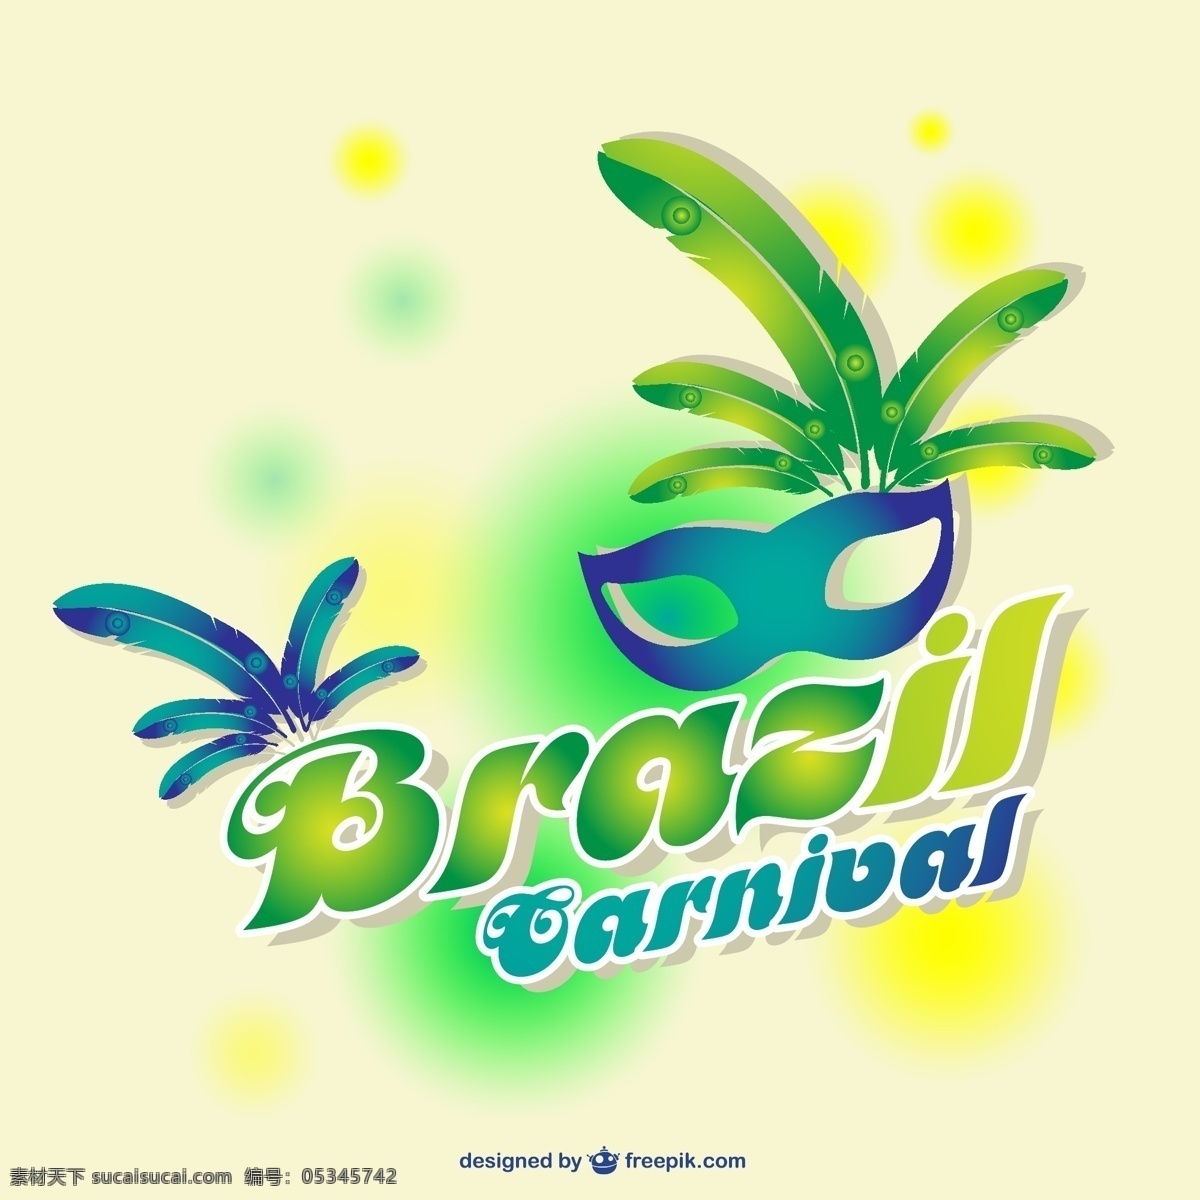 巴西 狂欢节 海报 派对 模板 字体 颜色 艺术 狂欢 文字 布局 庆典 活动 舞台 面具 丰富多彩 派对海报 乐趣 白色